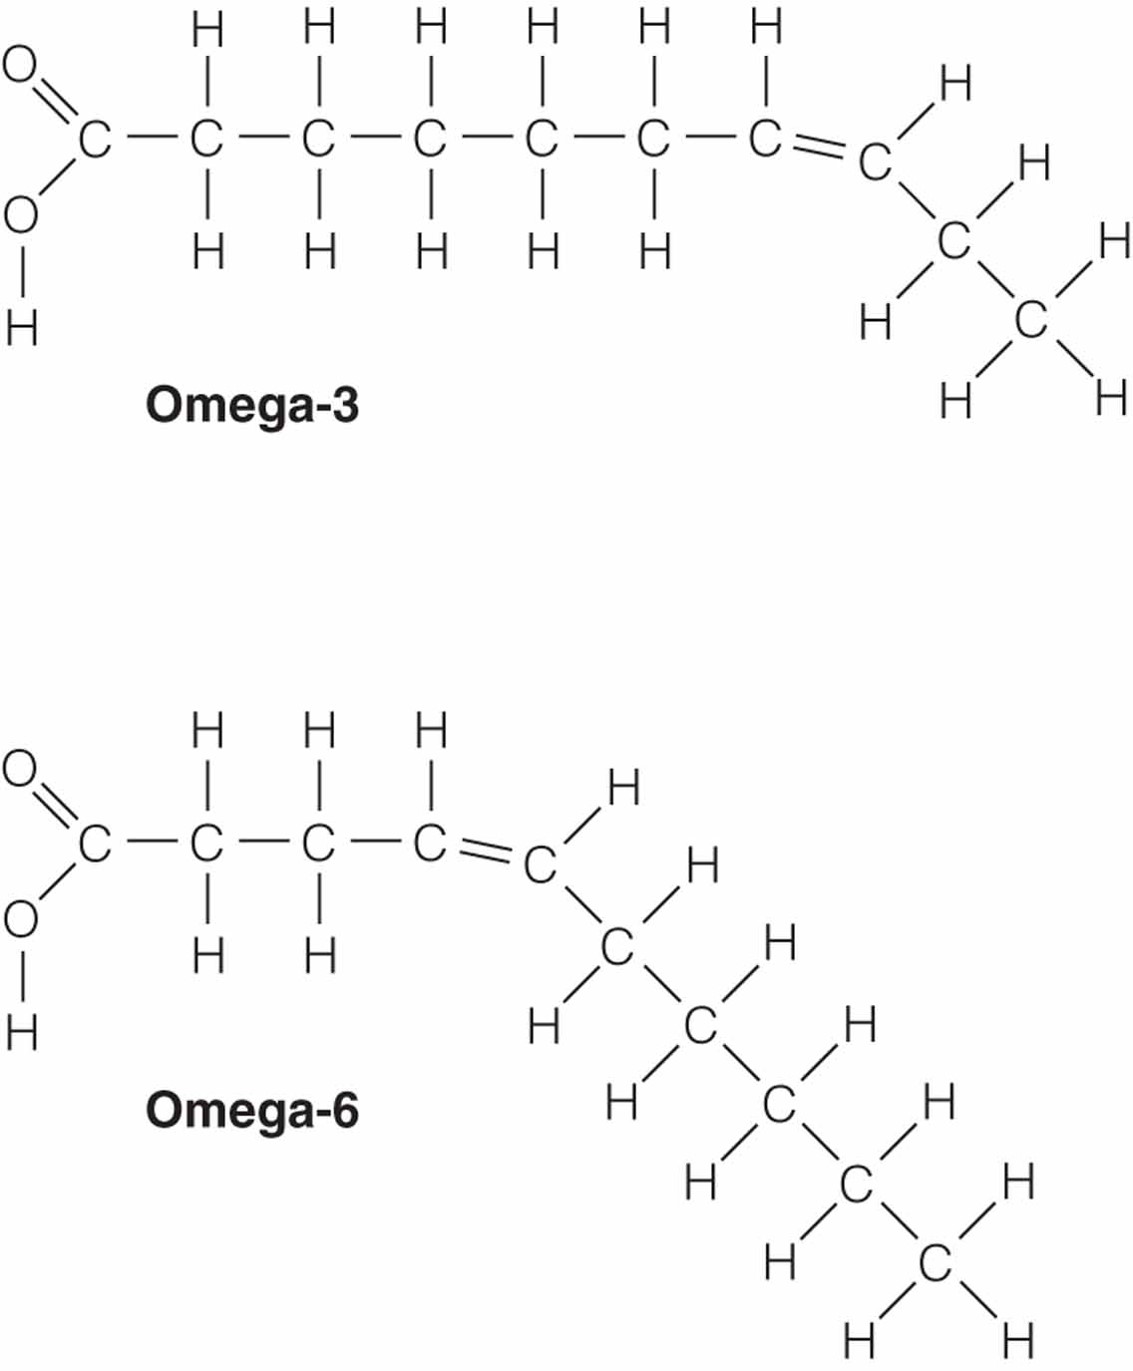 Omega-3 and Omega-6 Fatty Acids.